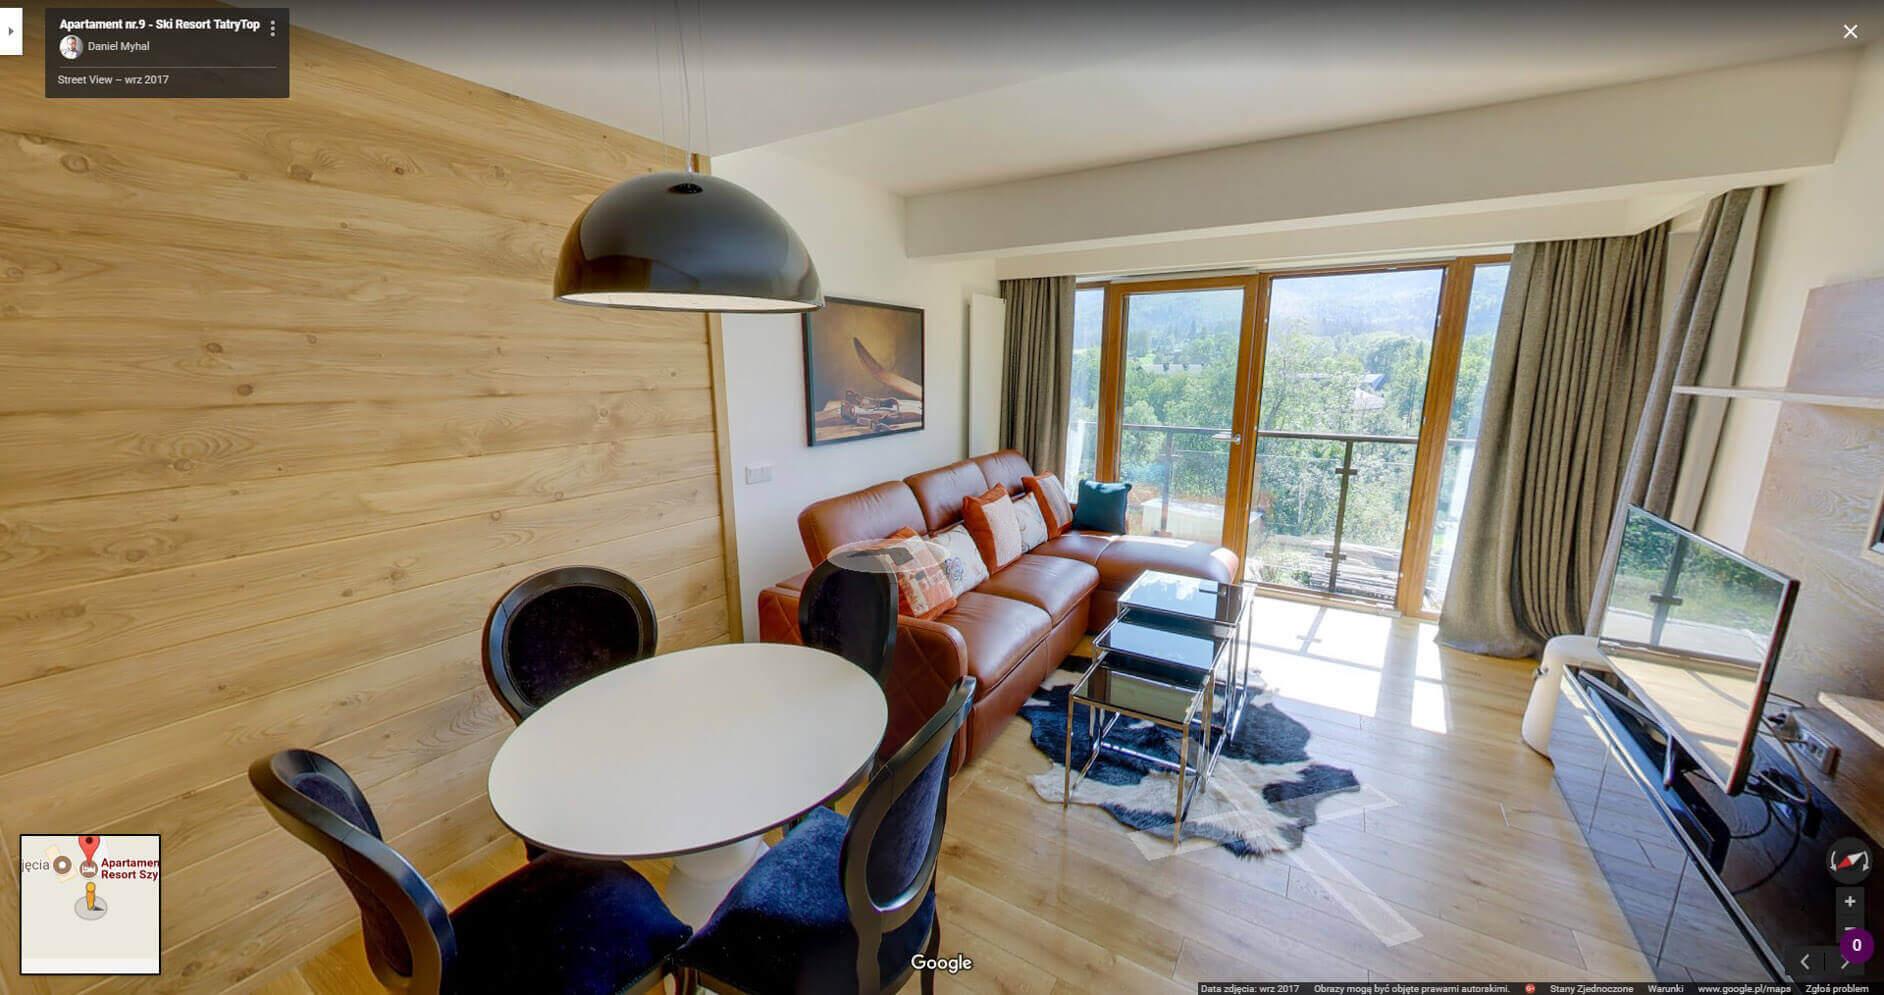 Ski Resort wirtualny spacer w apartamencie Google Street View Daniel Myhal